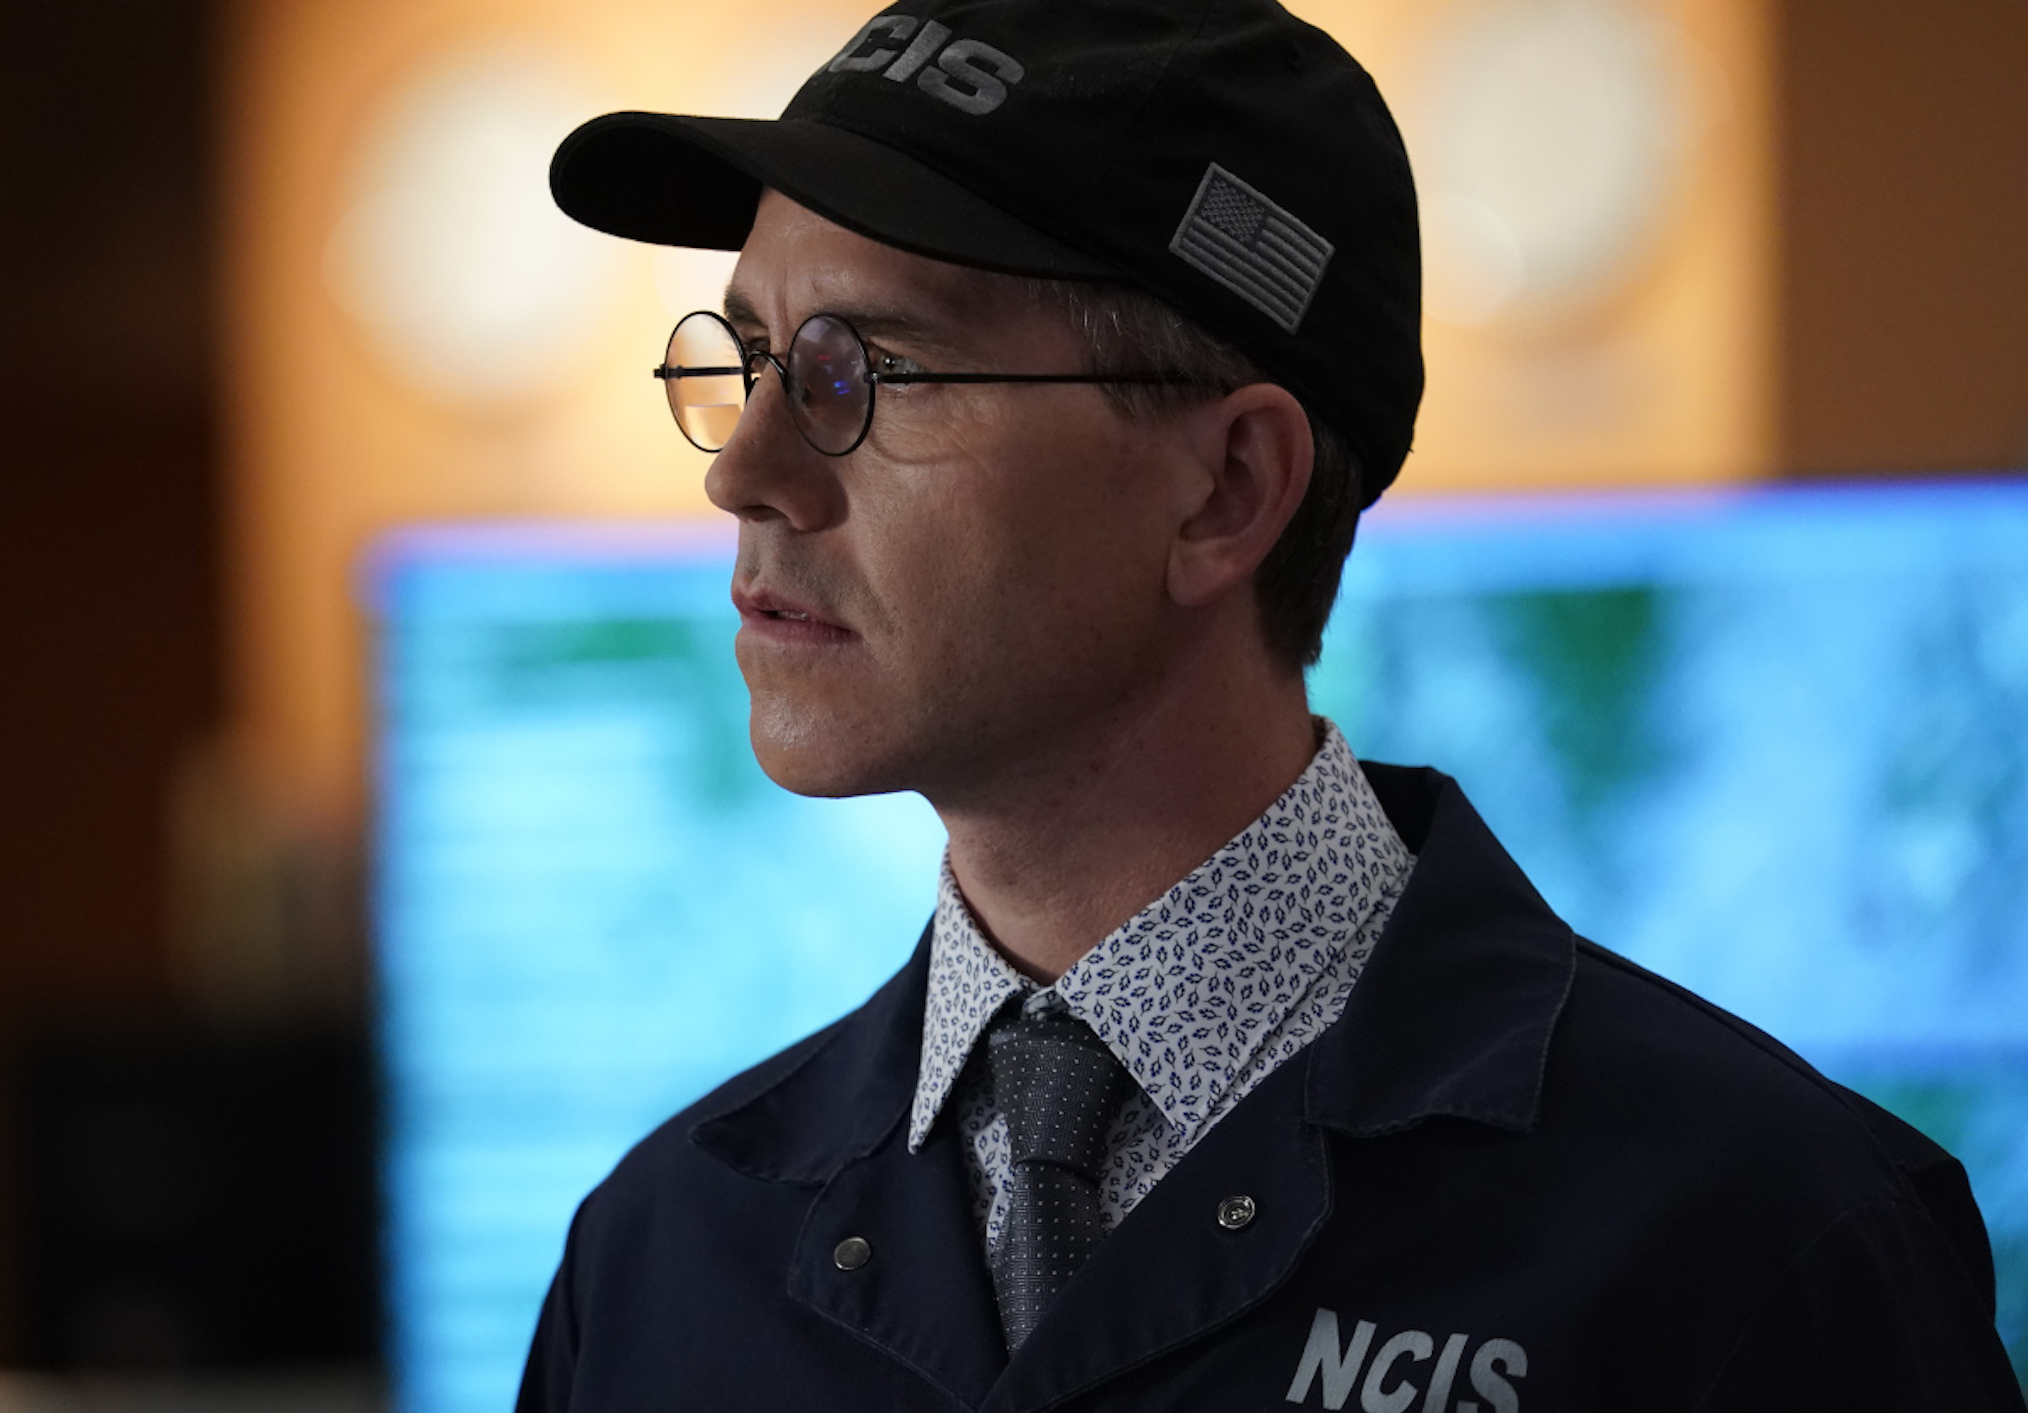 Brian Dietzen as Palmer in NCIS